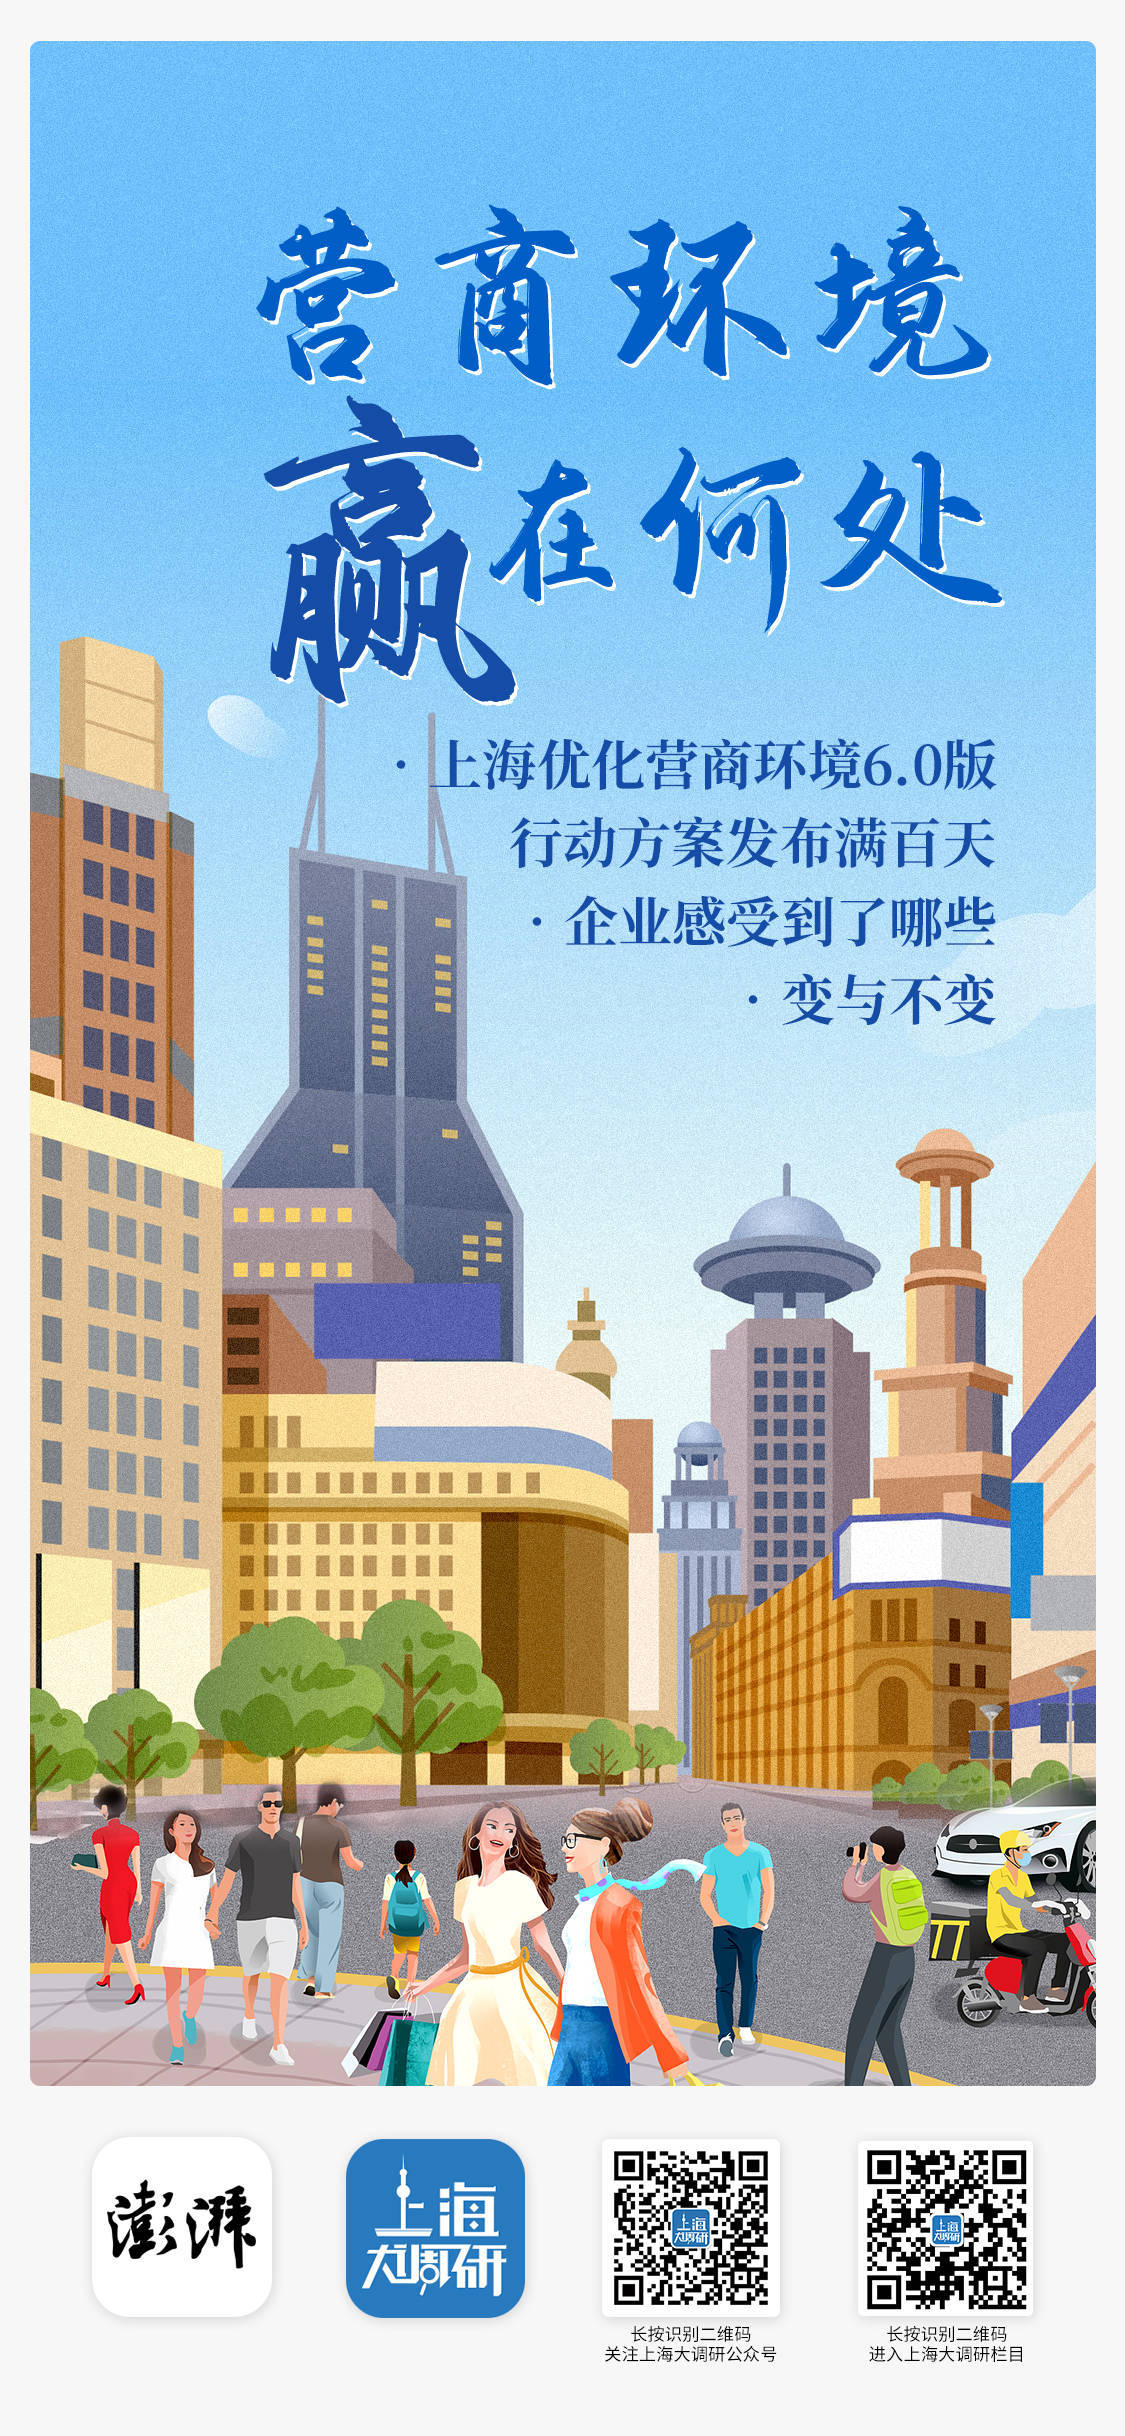 易小贷苹果版:访谈丨变与不变，上海优化营商环境6.0版方案发布百日后（上）